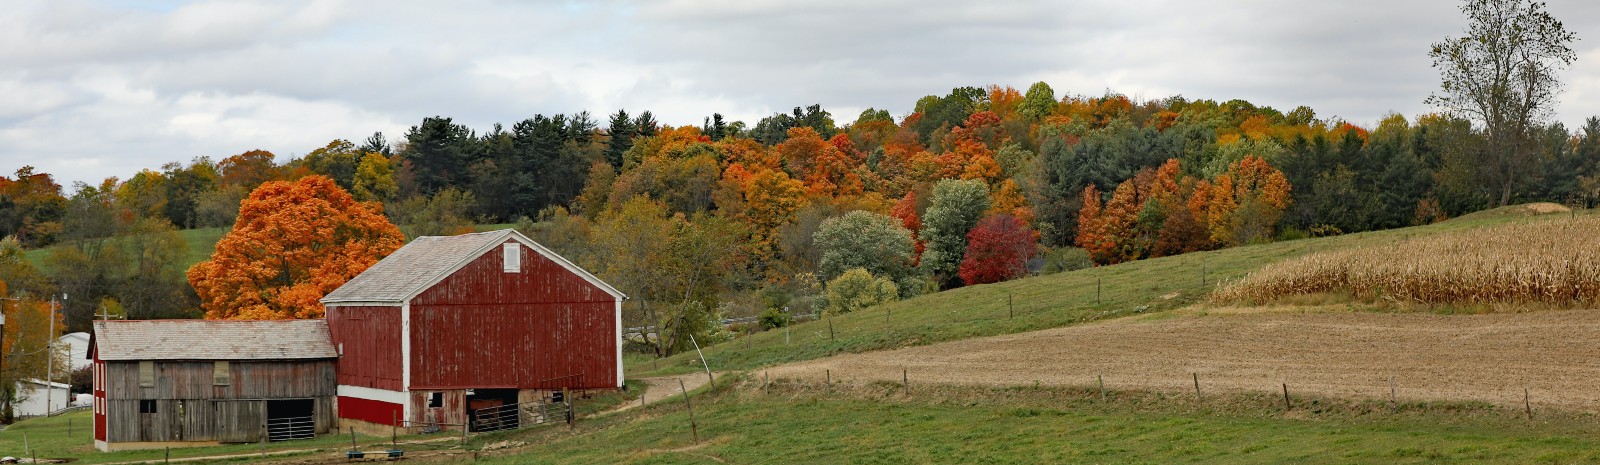 barn on farm in fall